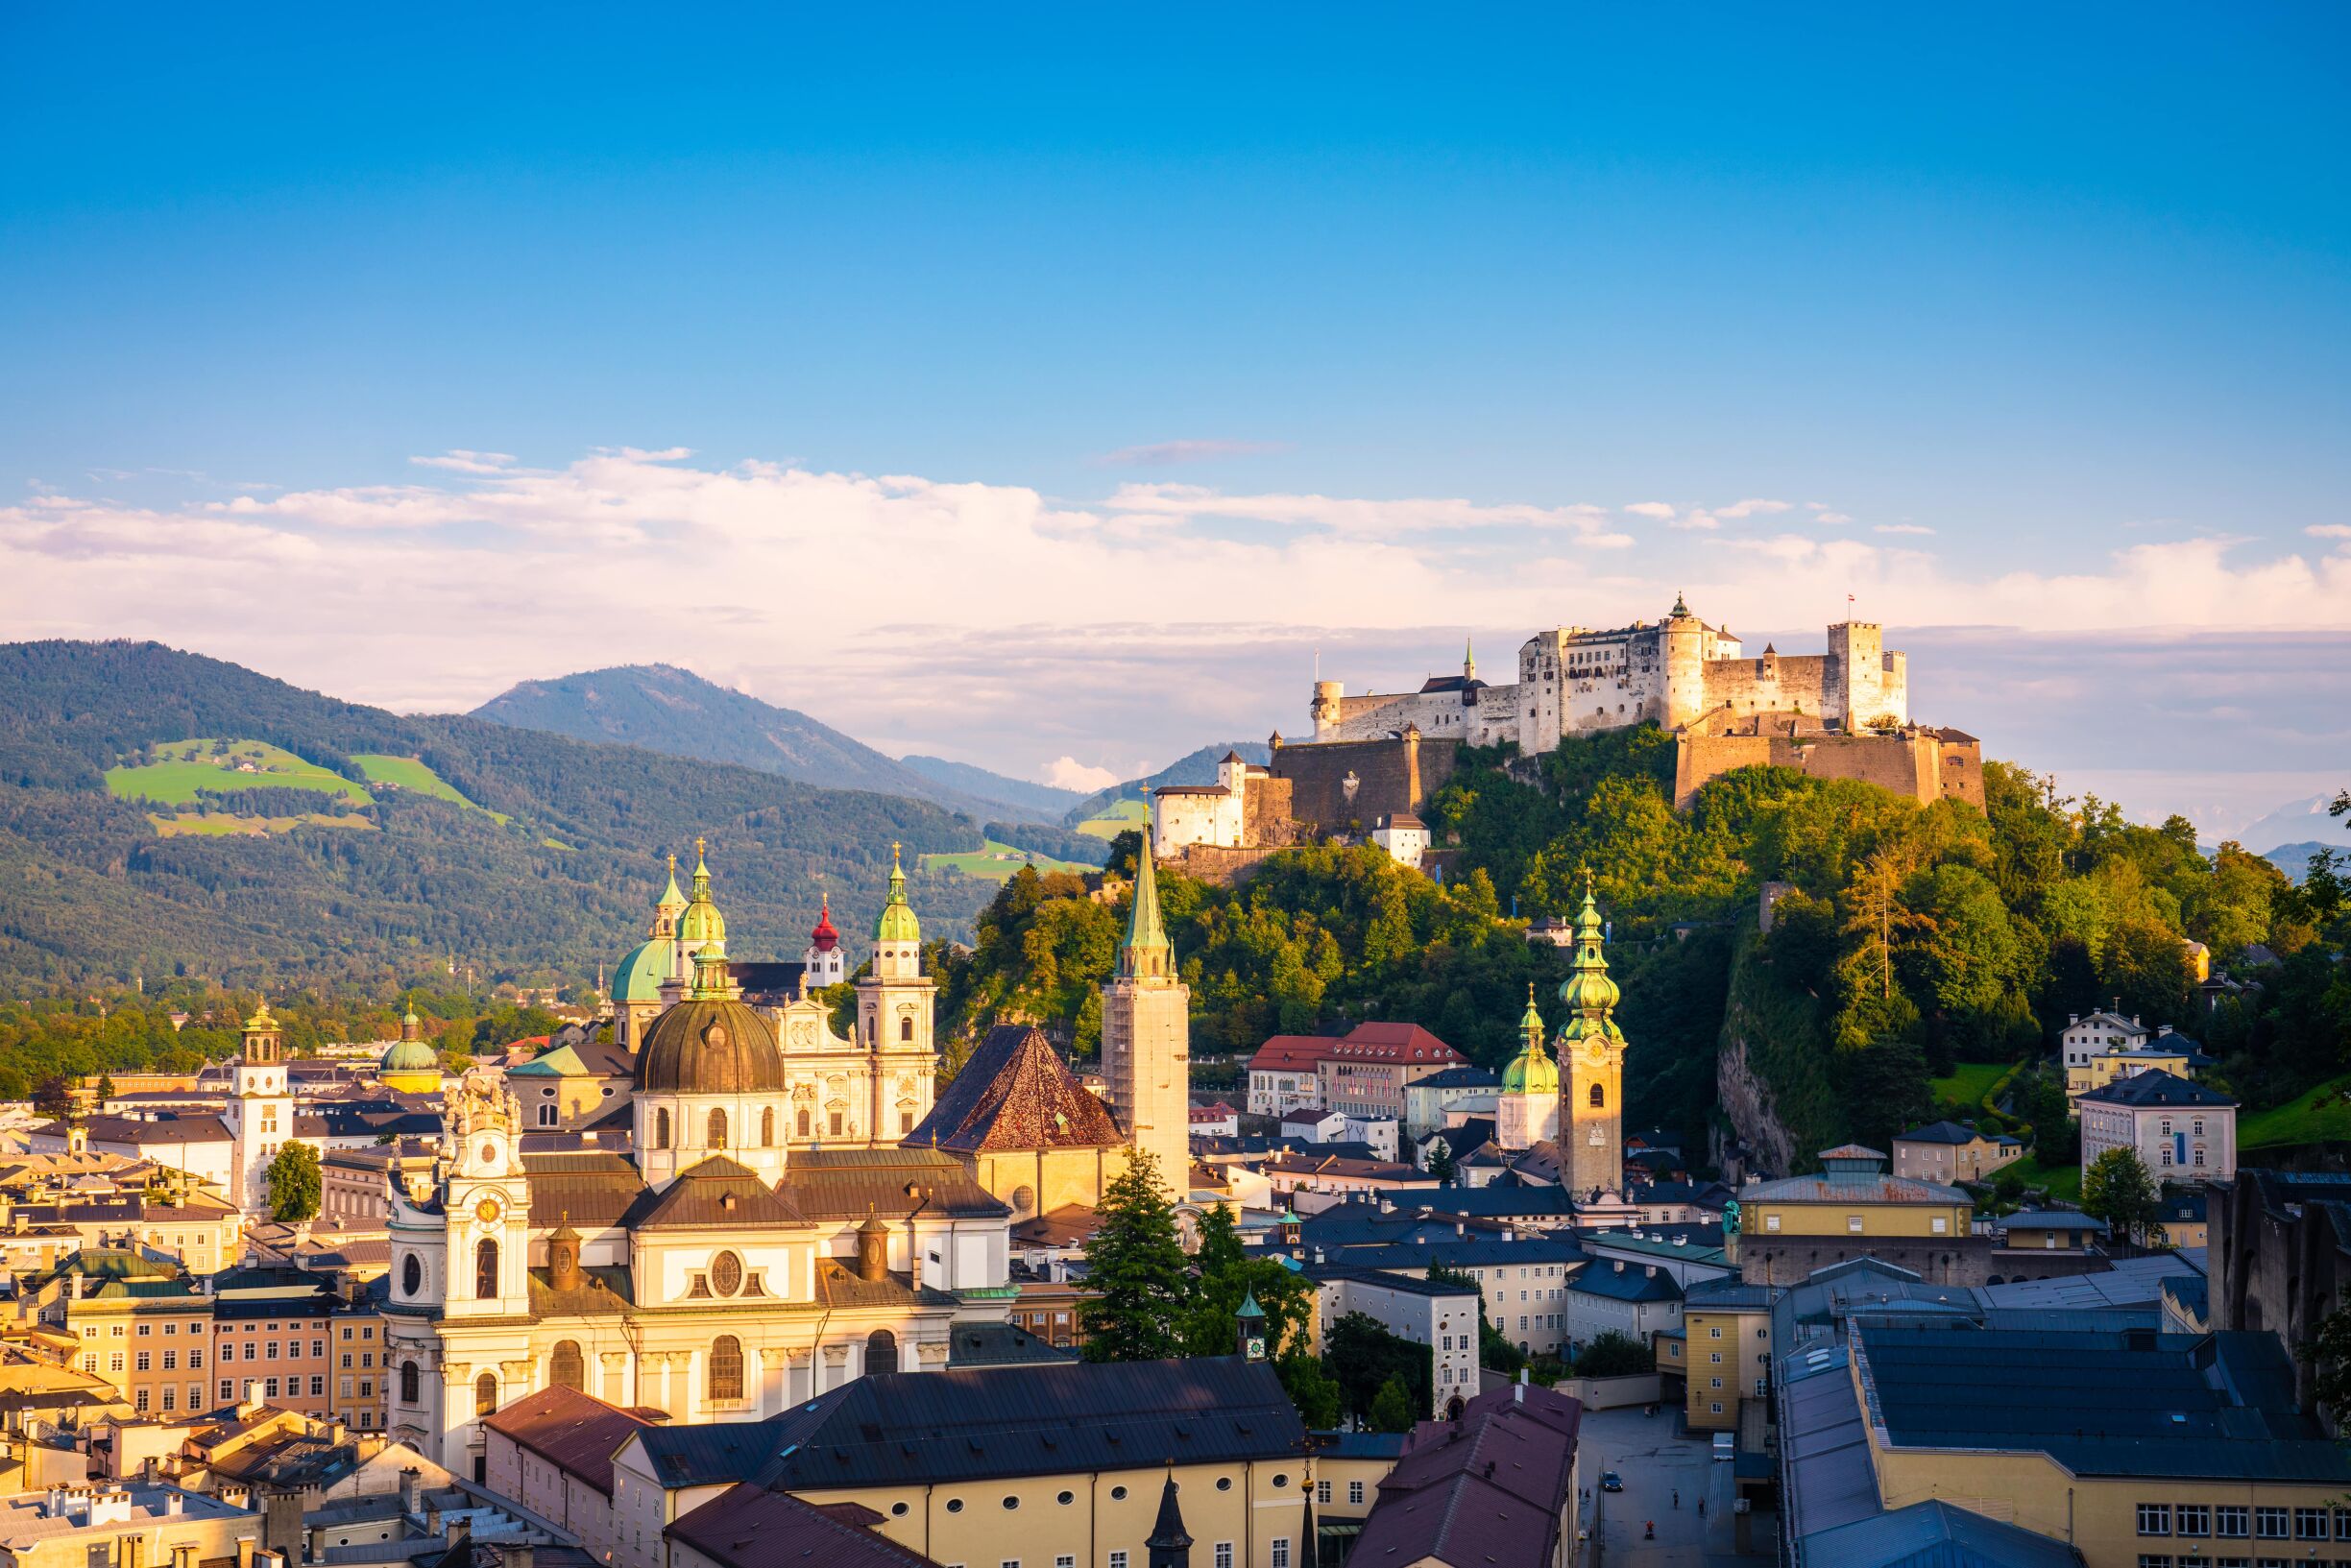 Os encantos do triângulo mágico da Europa: Salzburgo, Tirol e Baviera